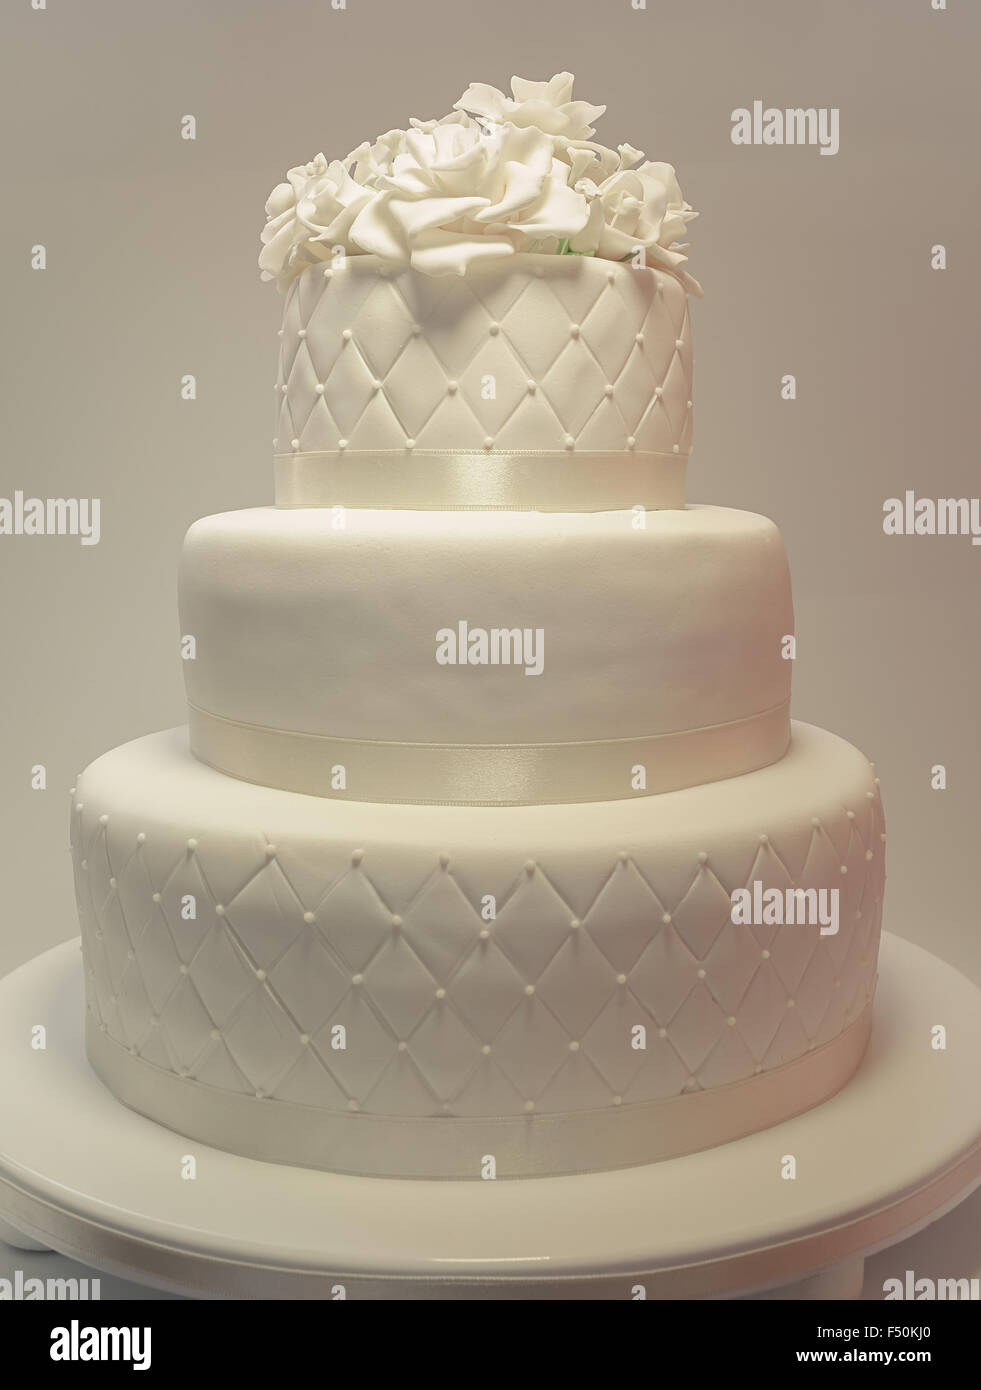 Détails d'un gâteau de mariage, décoration avec fondant blanc sur fond blanc. Banque D'Images